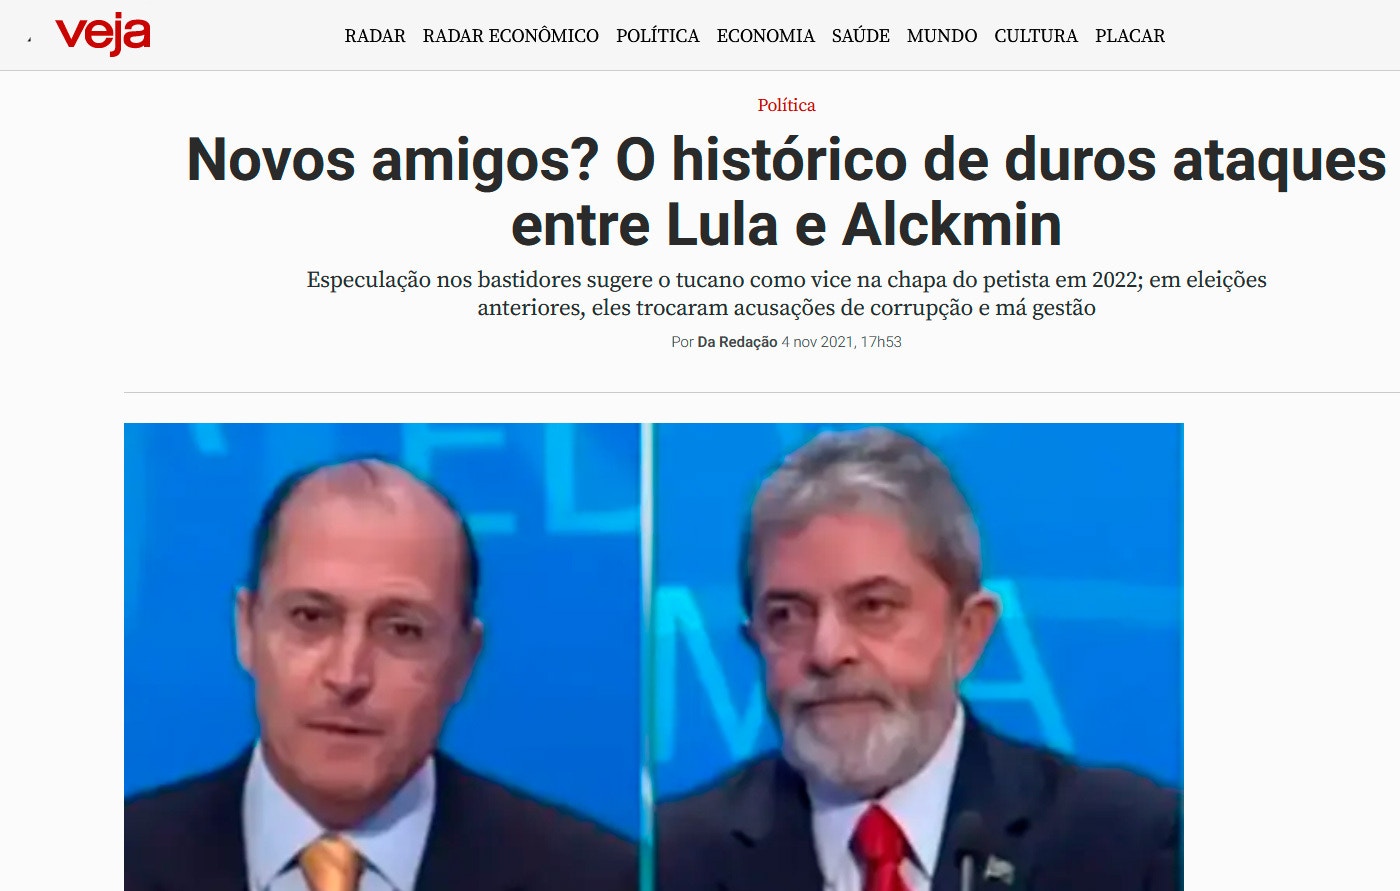 O ex-governador de São Paulo Geraldo Alckmin e o ex-presidente Luiz Inácio Lula da Silva (PT).